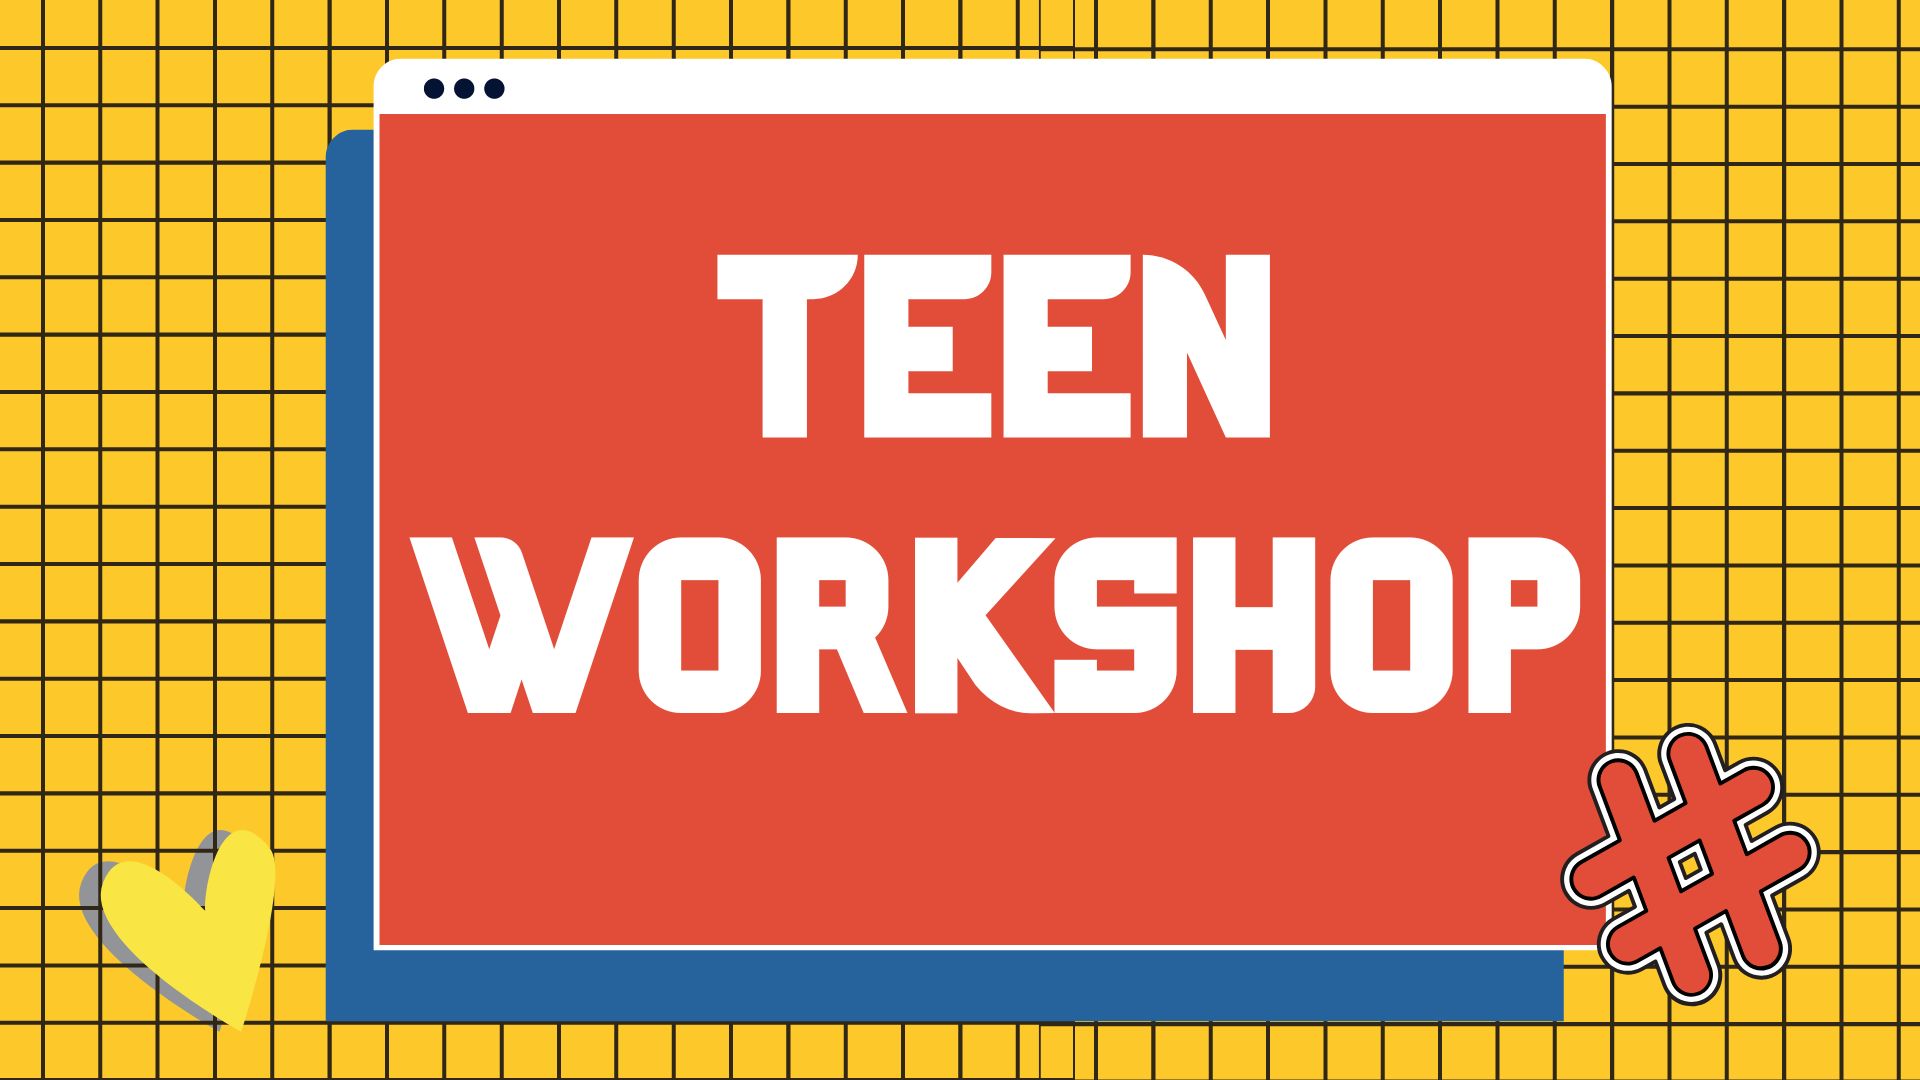 Muslimah Teen Workshop 2023